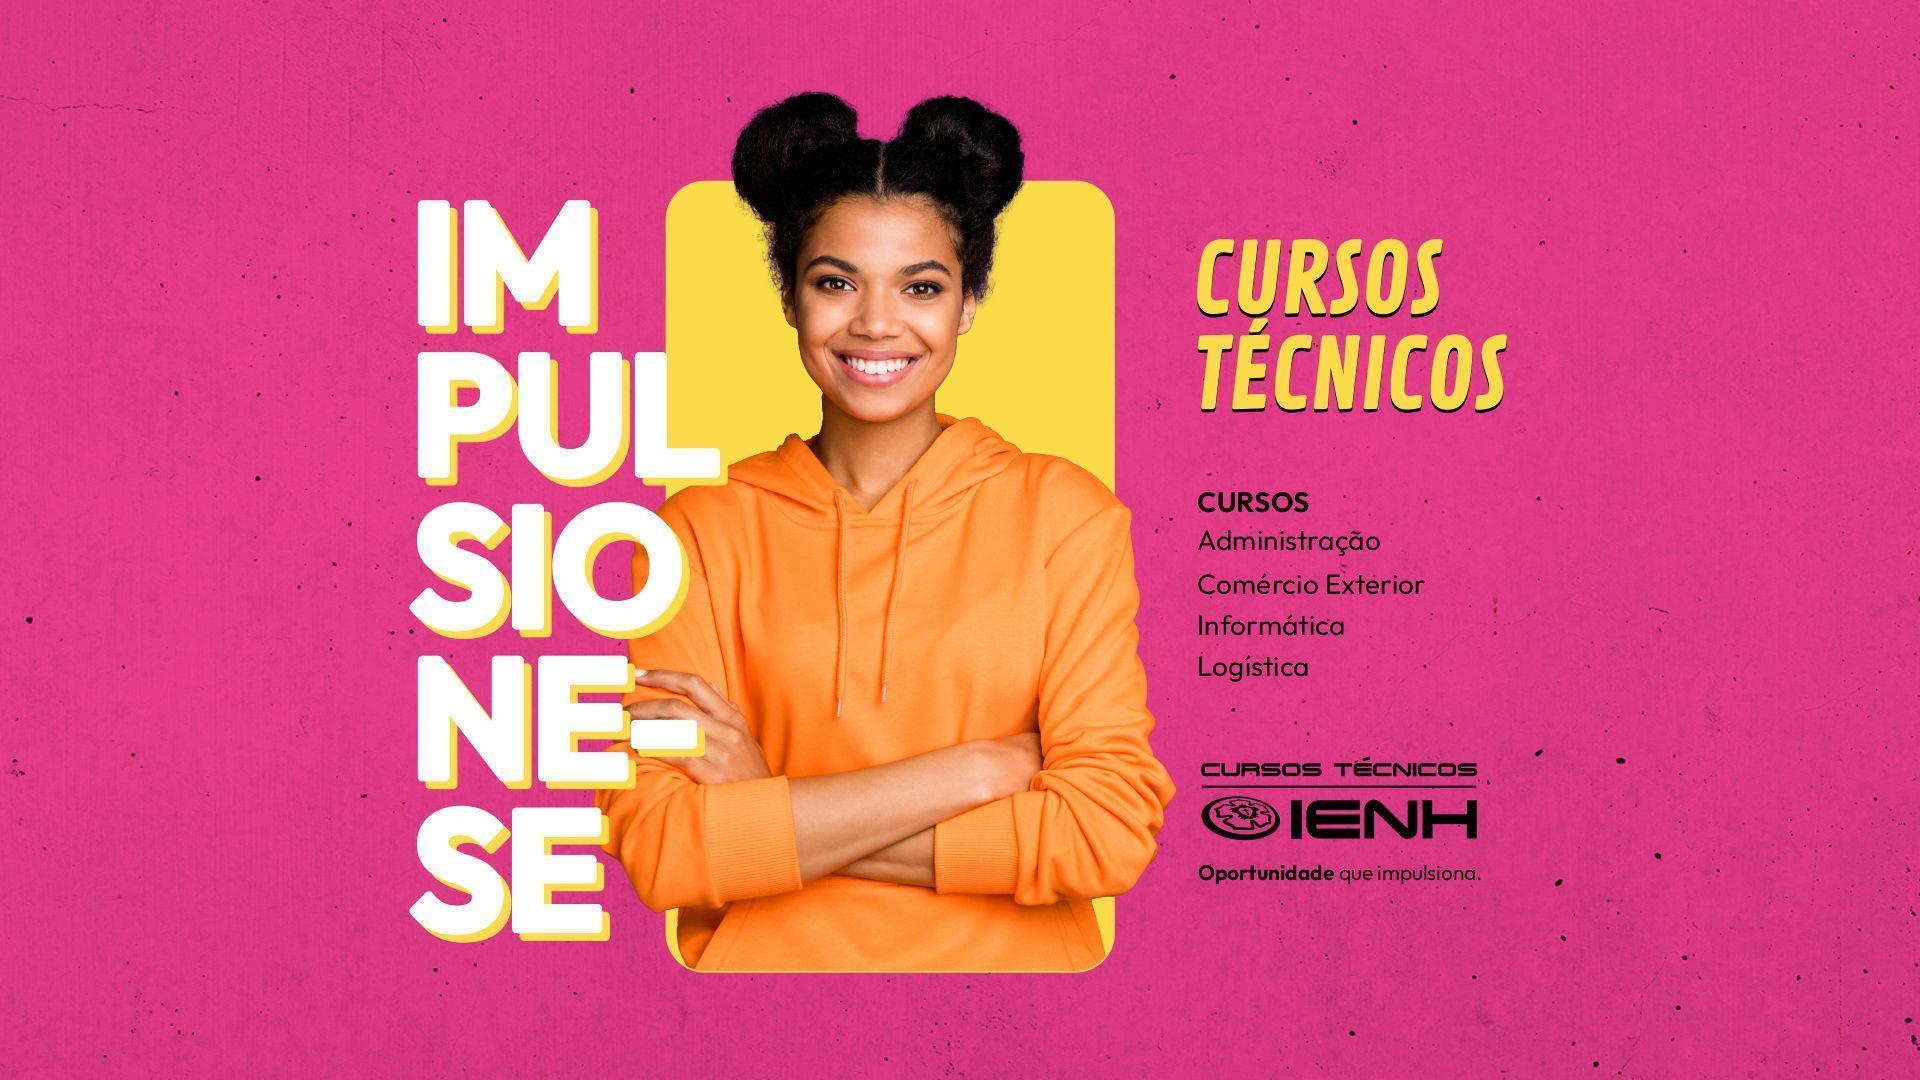 IENH lança novo edital com bolsas de até 50% de desconto para Cursos Técnicos